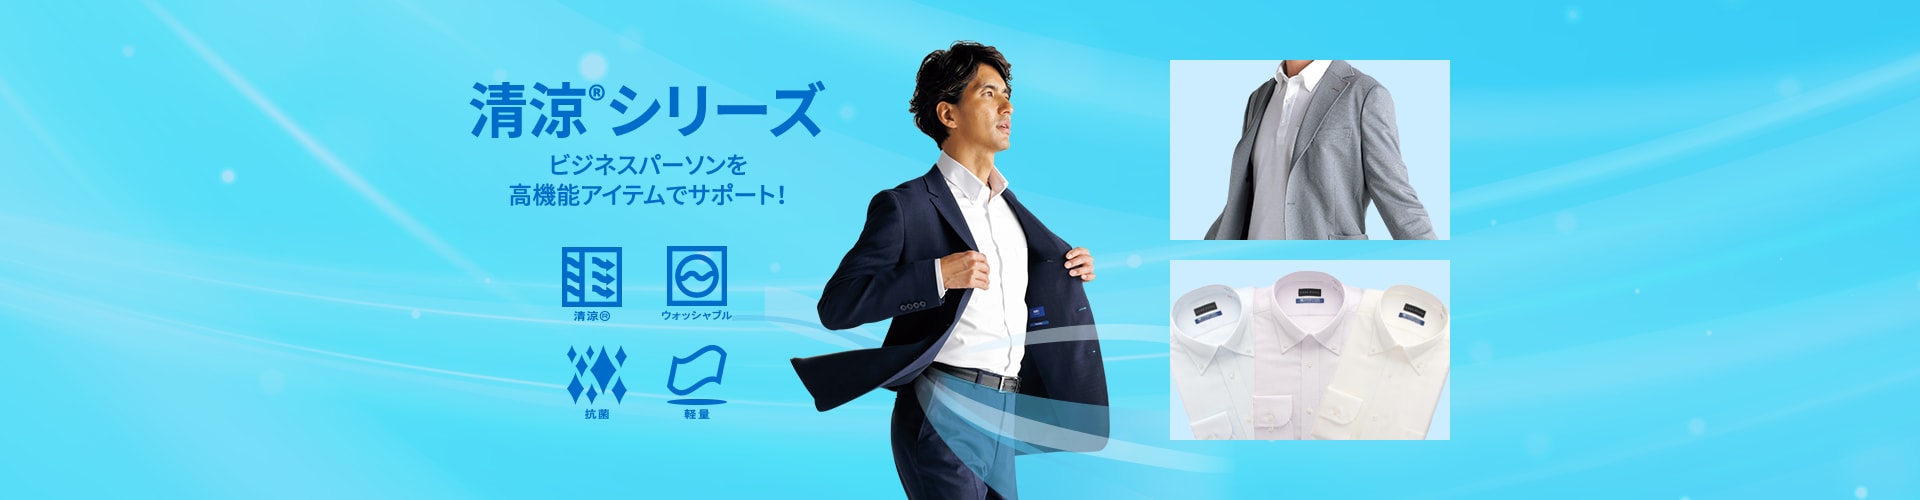 清涼®シリーズ ビジネスパーソンを高機能アイテムでサポート!